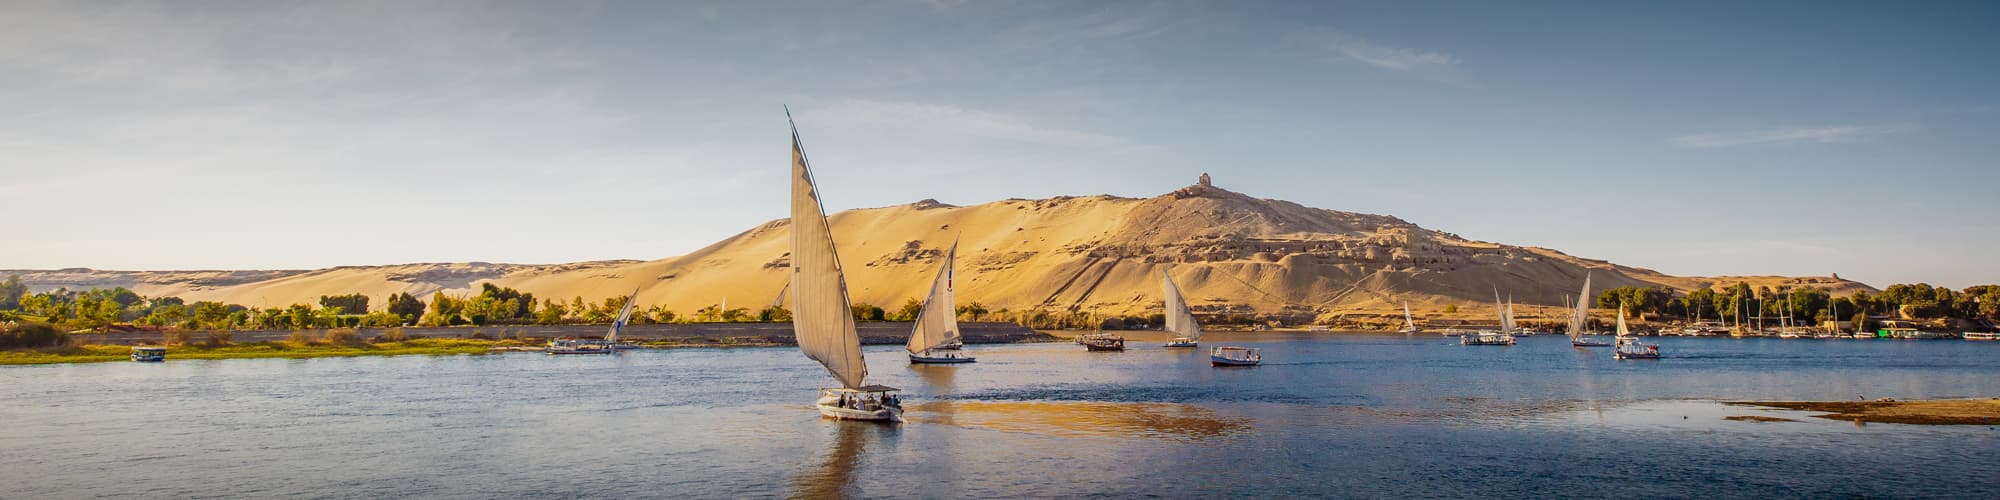 Croisière sur le Nil et Louxor : circuit, randonnée, voyage © Calin Stan